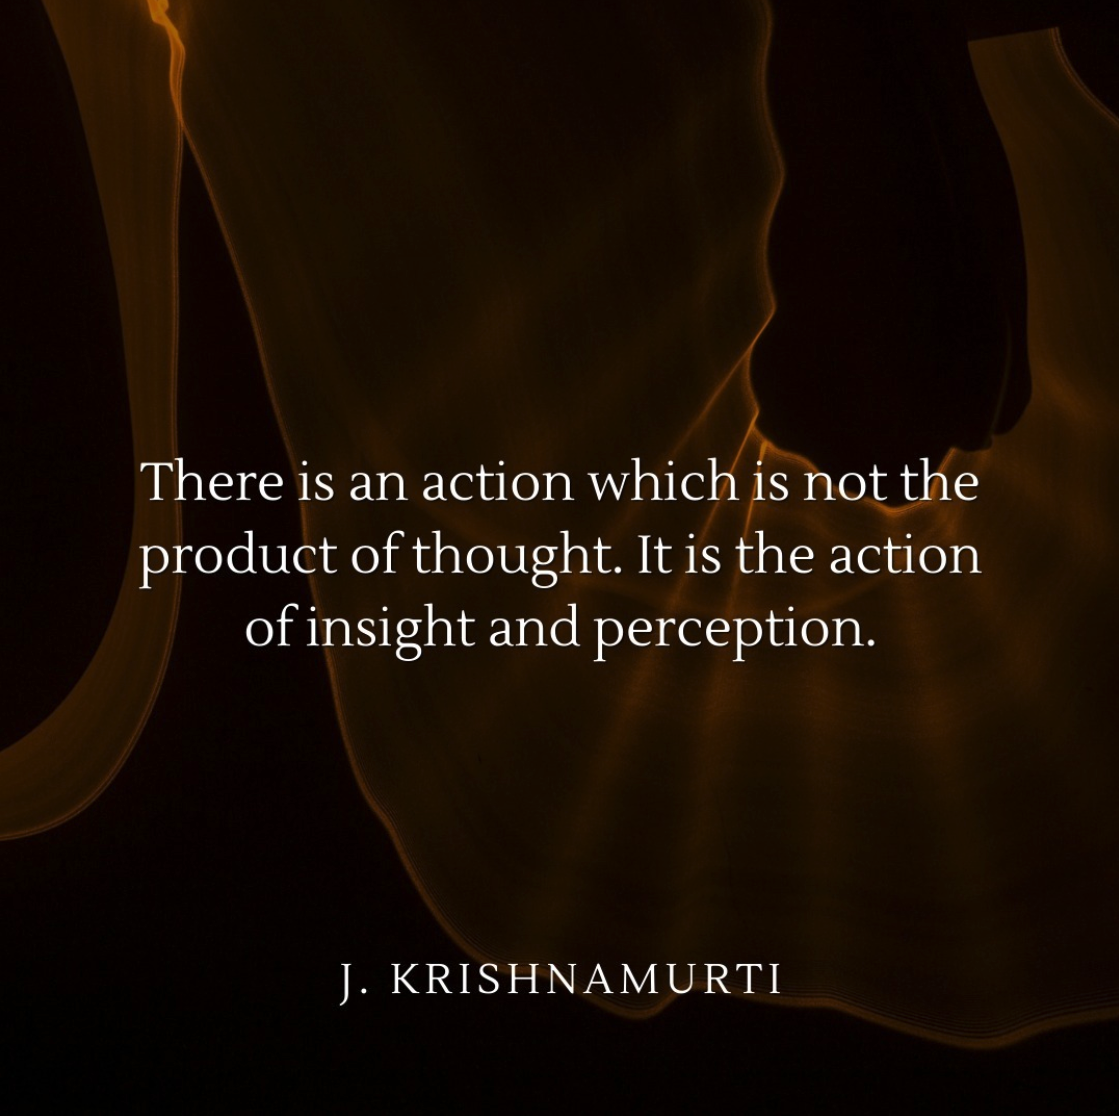 The action of insight - Krishnamurti ©Change et Sois